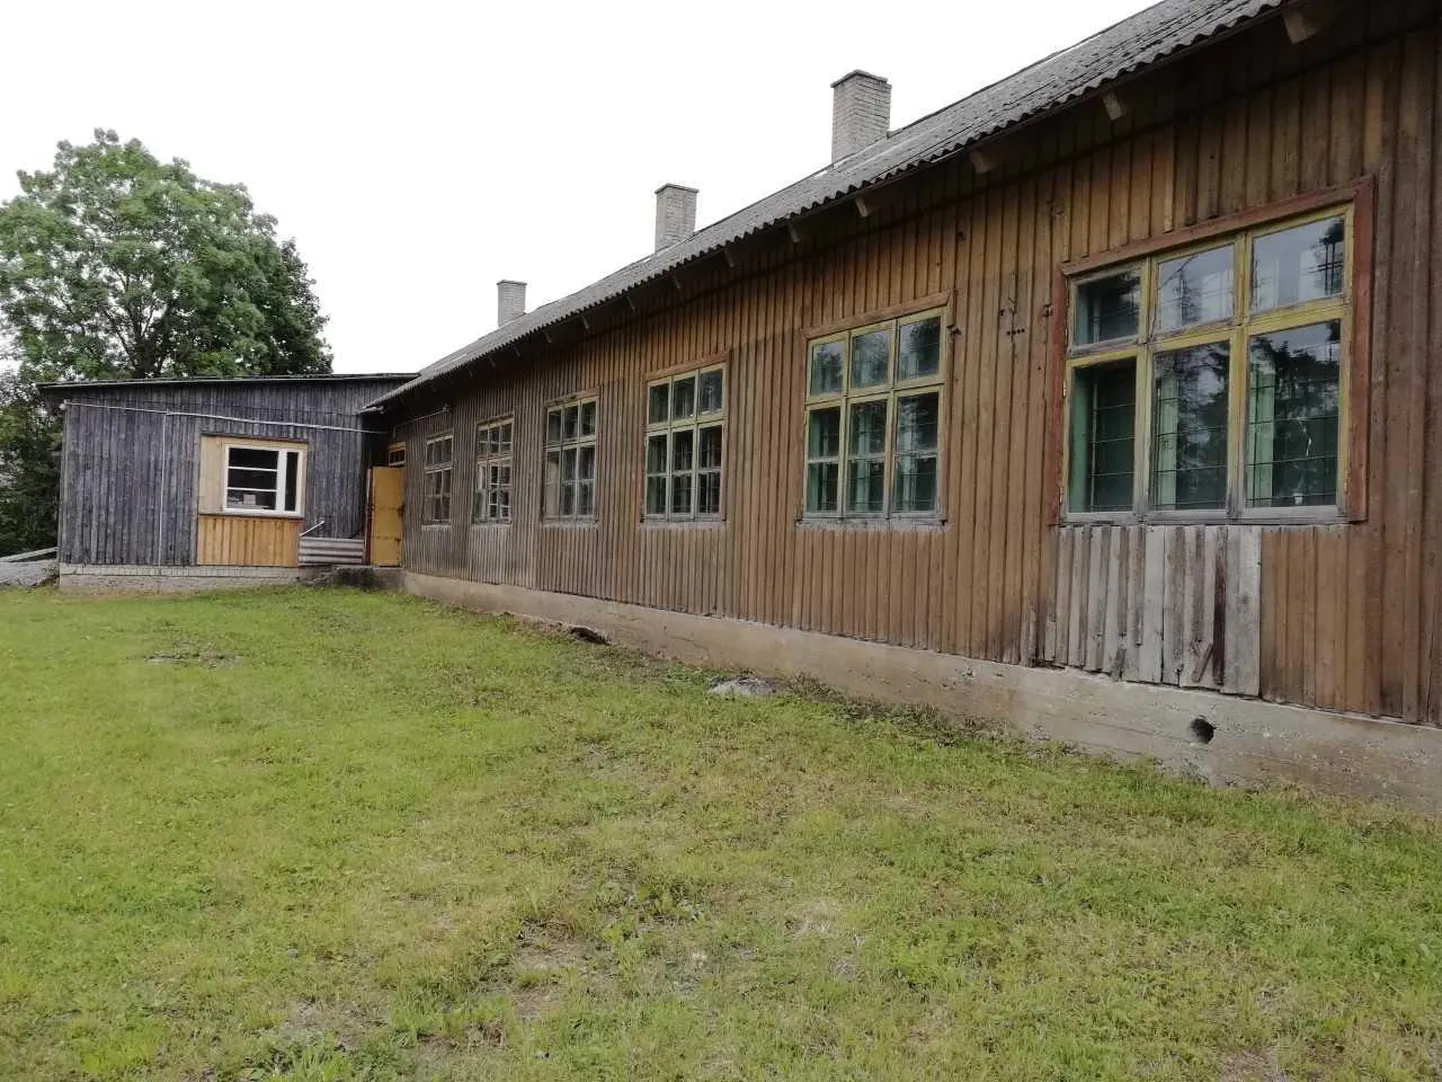 Uduvere vanas villavabrikus näeb Pärnu-Jaagupi aleviteatri Rändtirtsud suvelavastust.